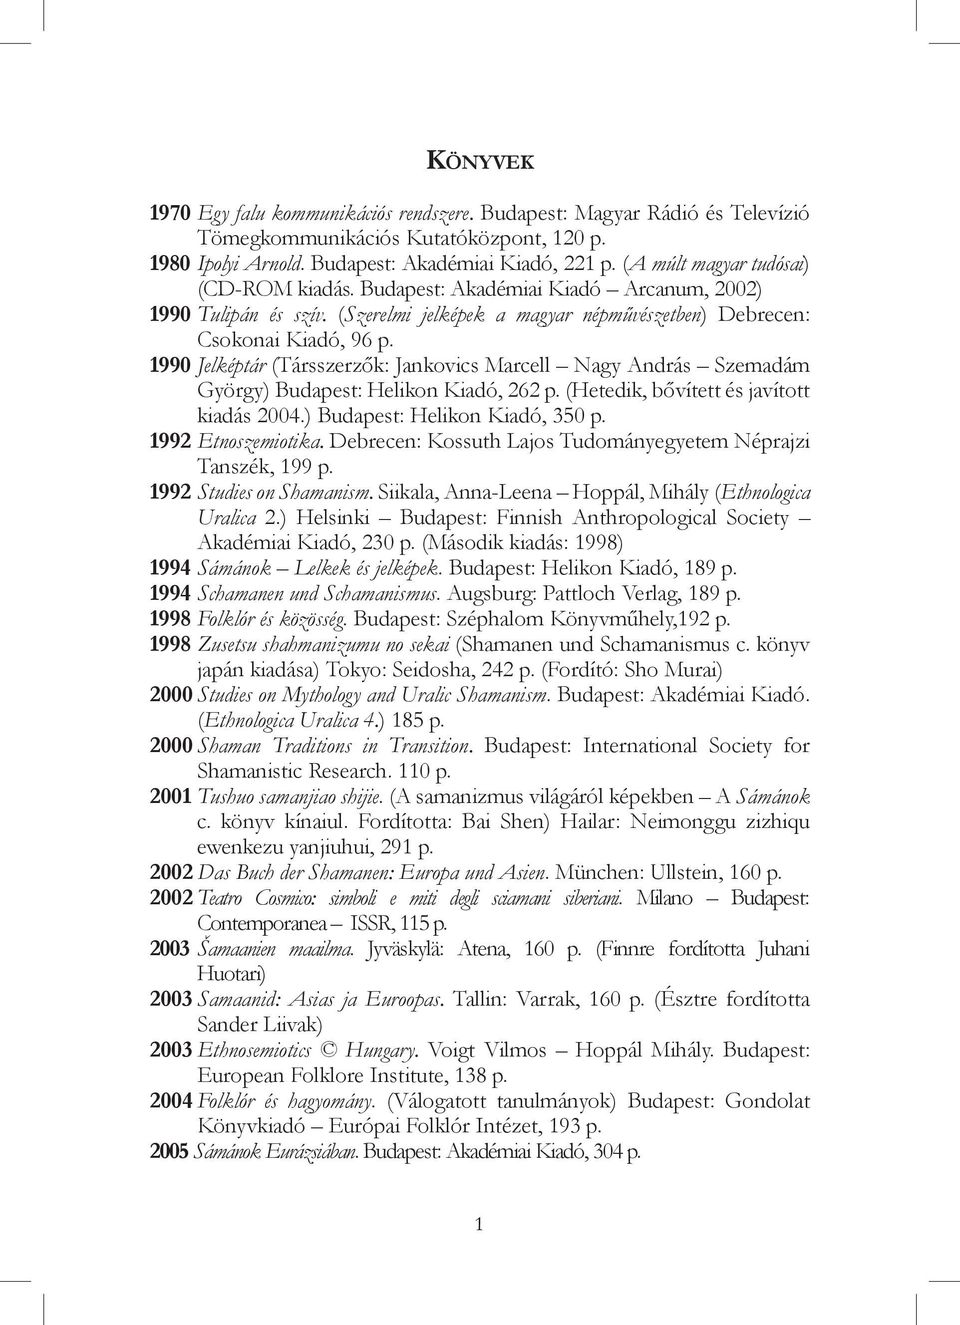 1990 Jelképtár (Társszerzők: Jankovics Marcell Nagy András Szemadám György) Budapest: Helikon Kiadó, 262 p. (Hetedik, bővített és javított kiadás 2004.) Budapest: Helikon Kiadó, 350 p.